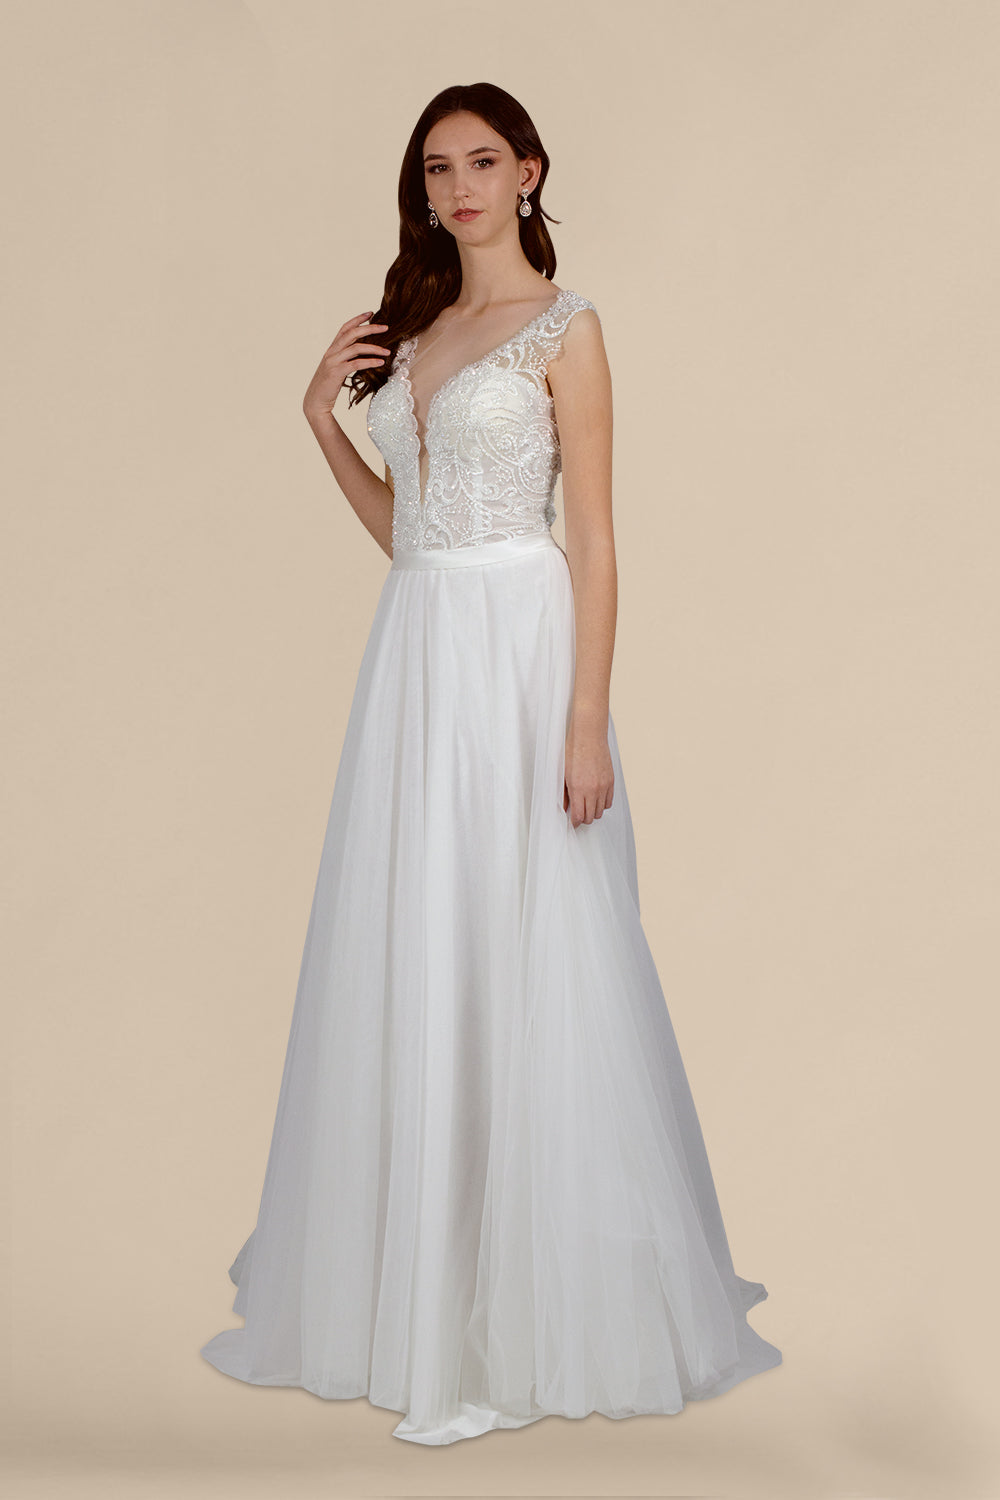 custom made A line wedding dresses plus sizes perth australia envious bridal & formal 